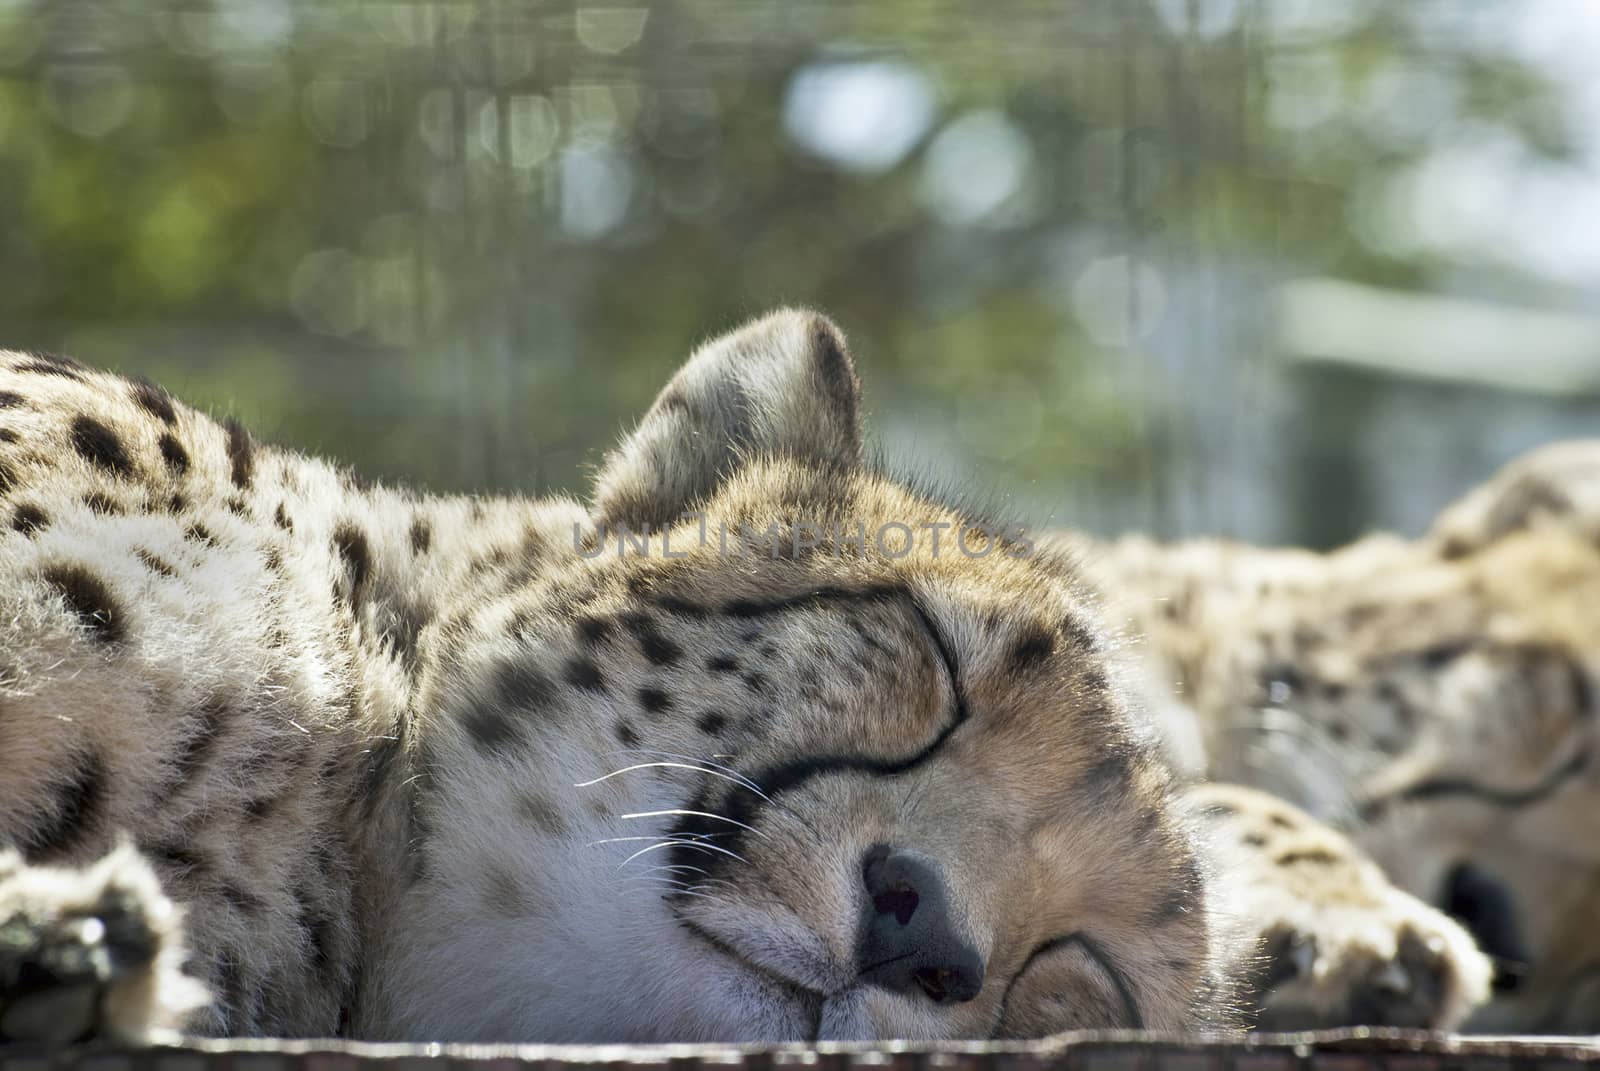 Sleeping cheetahs by Anna07